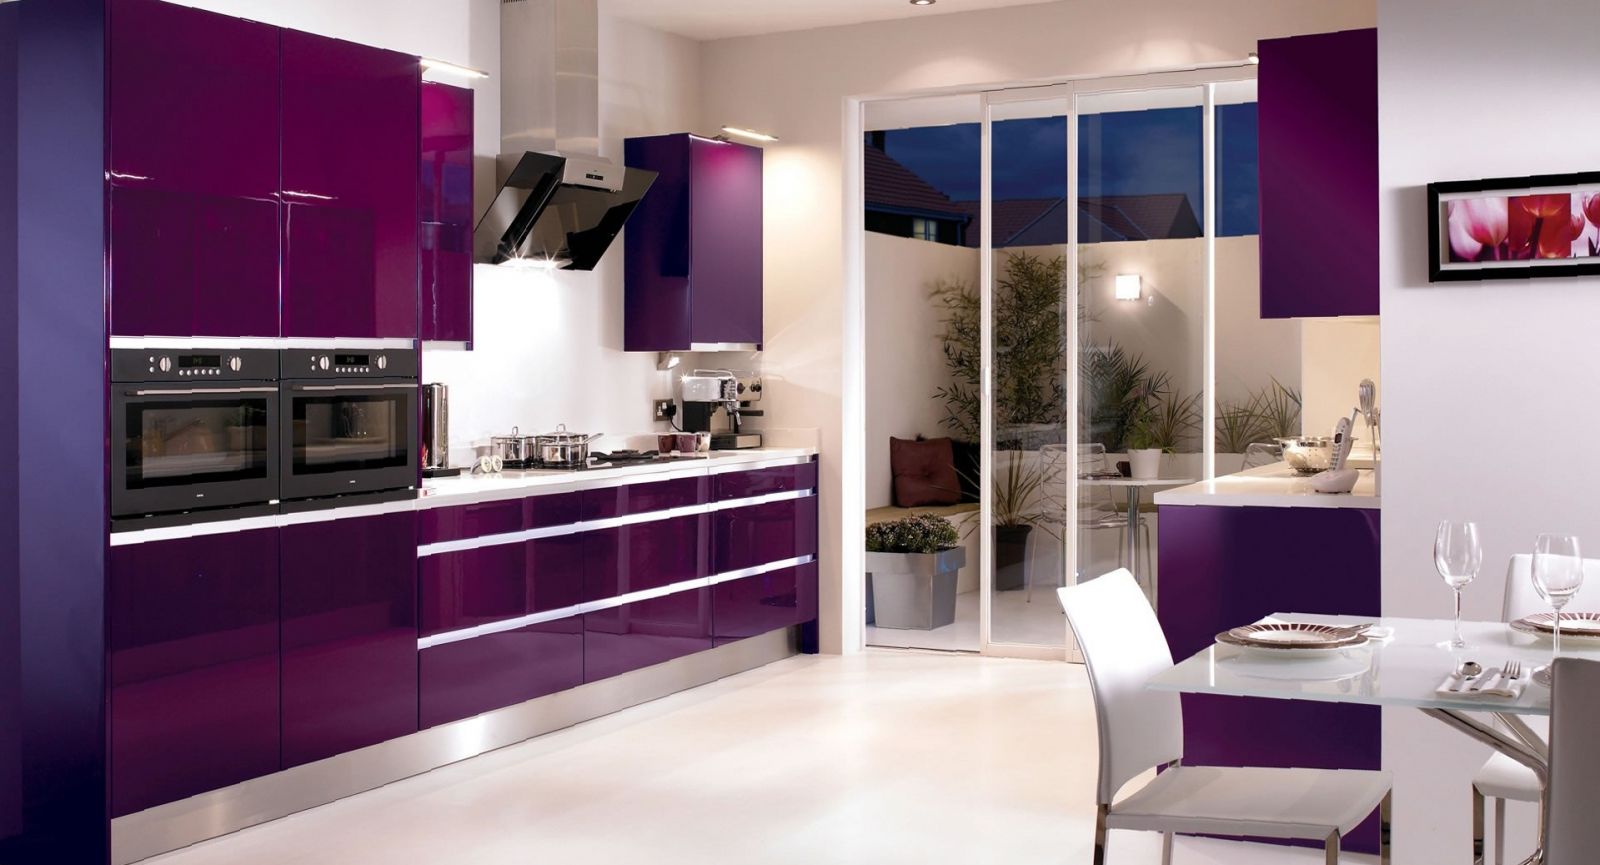 light kitchen style in purple